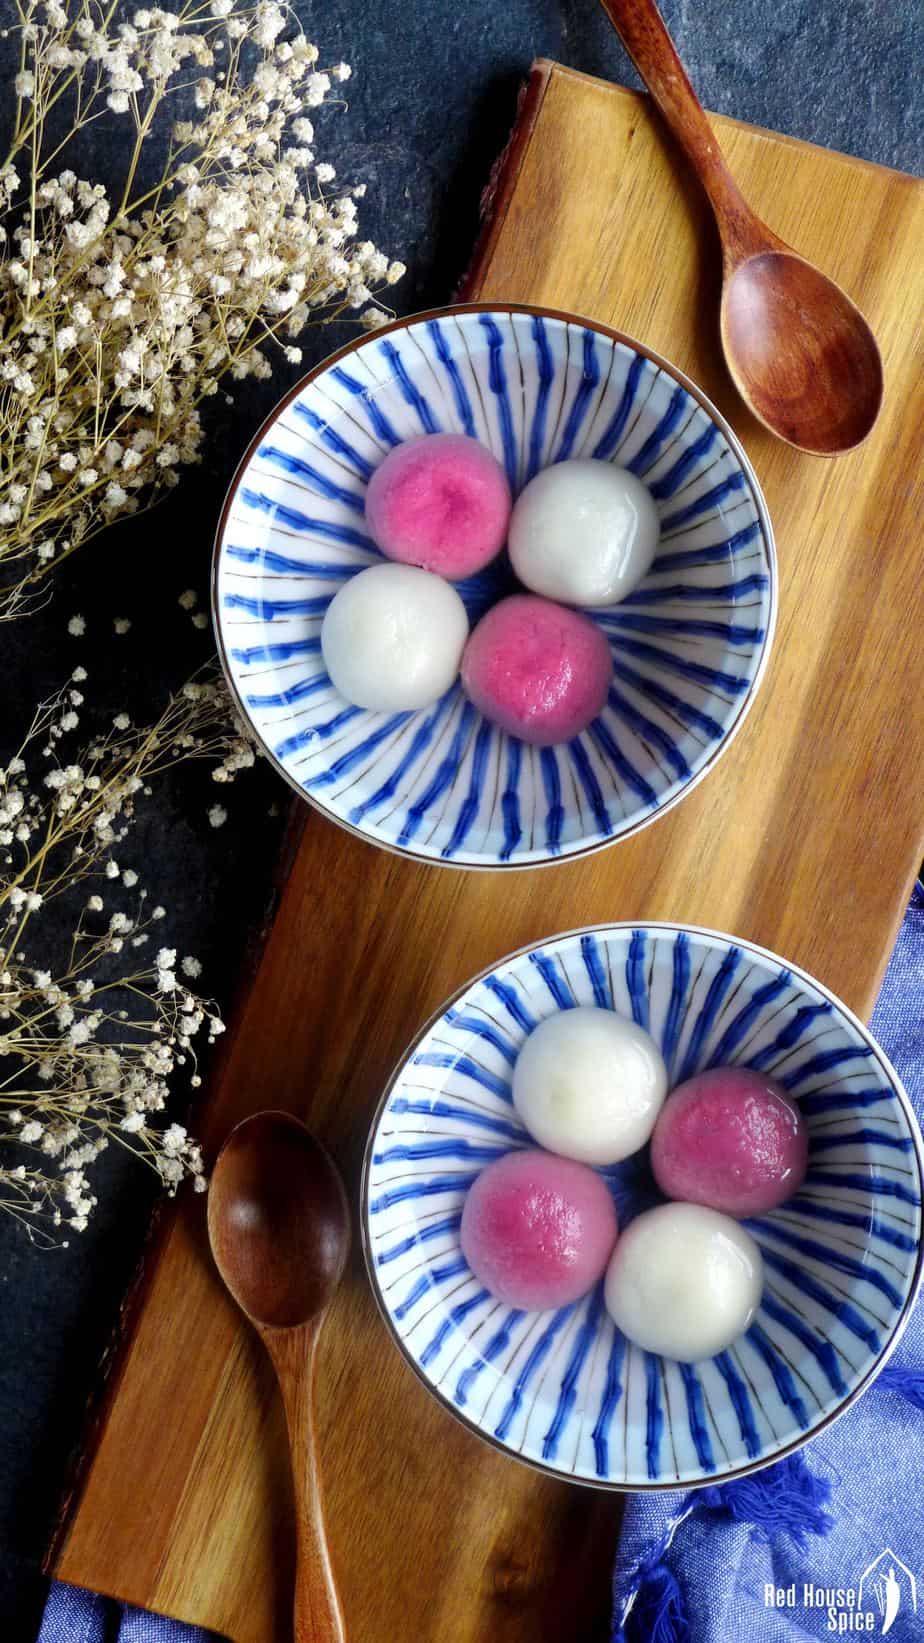 Two bowls of Tang Yuan (Chinese glutinous rice balls).